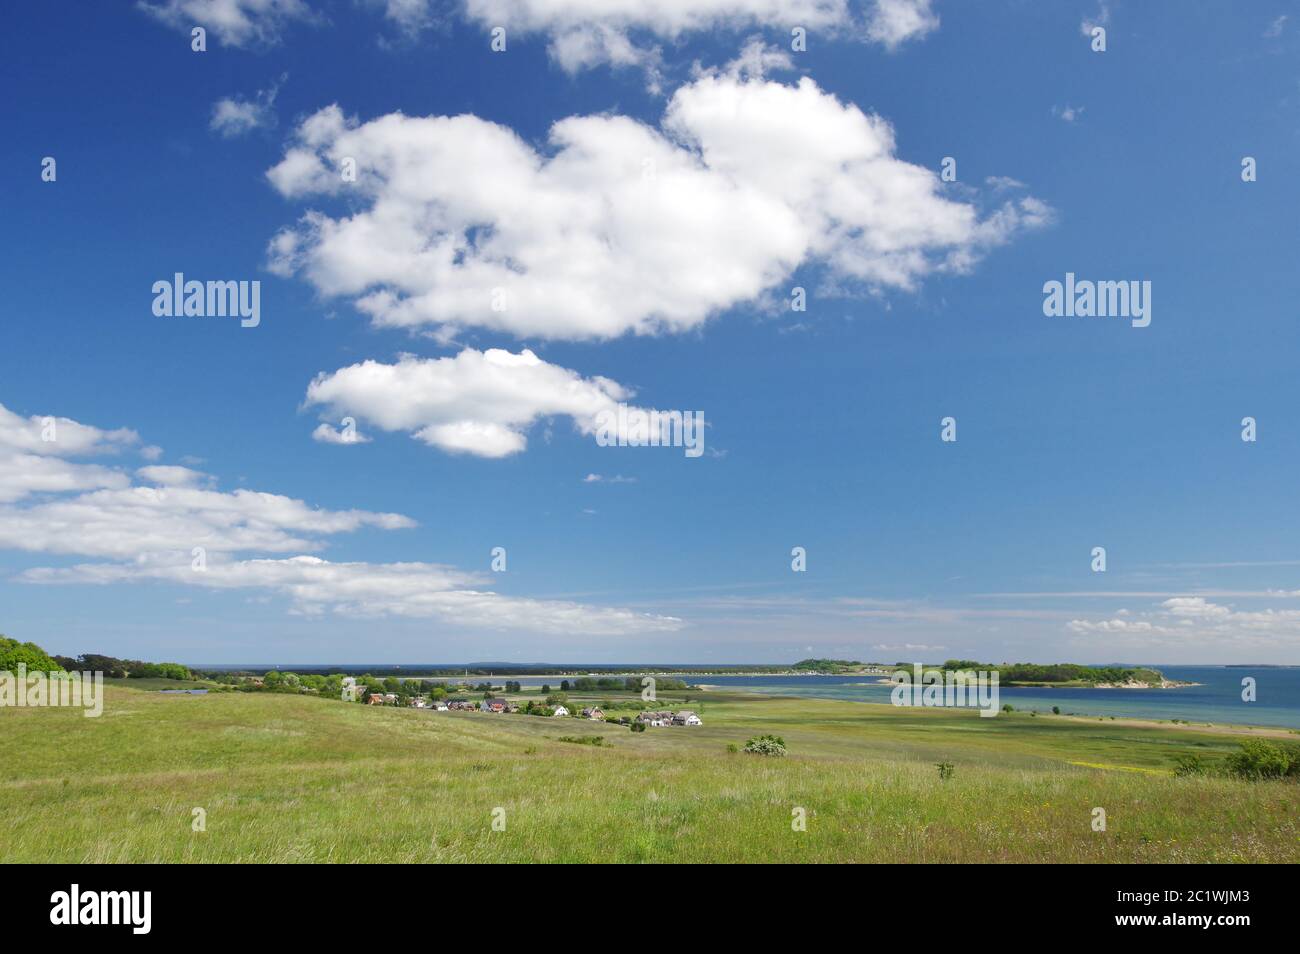 Villaggio di GroÃŸ Zicker e all'orizzonte Thiessow e la penisola Klein Zicker con la scogliera, Mar Baltico, MÃ¶nchgut, Isola di RÃ¼gen, Germania, Europa occidentale Foto Stock